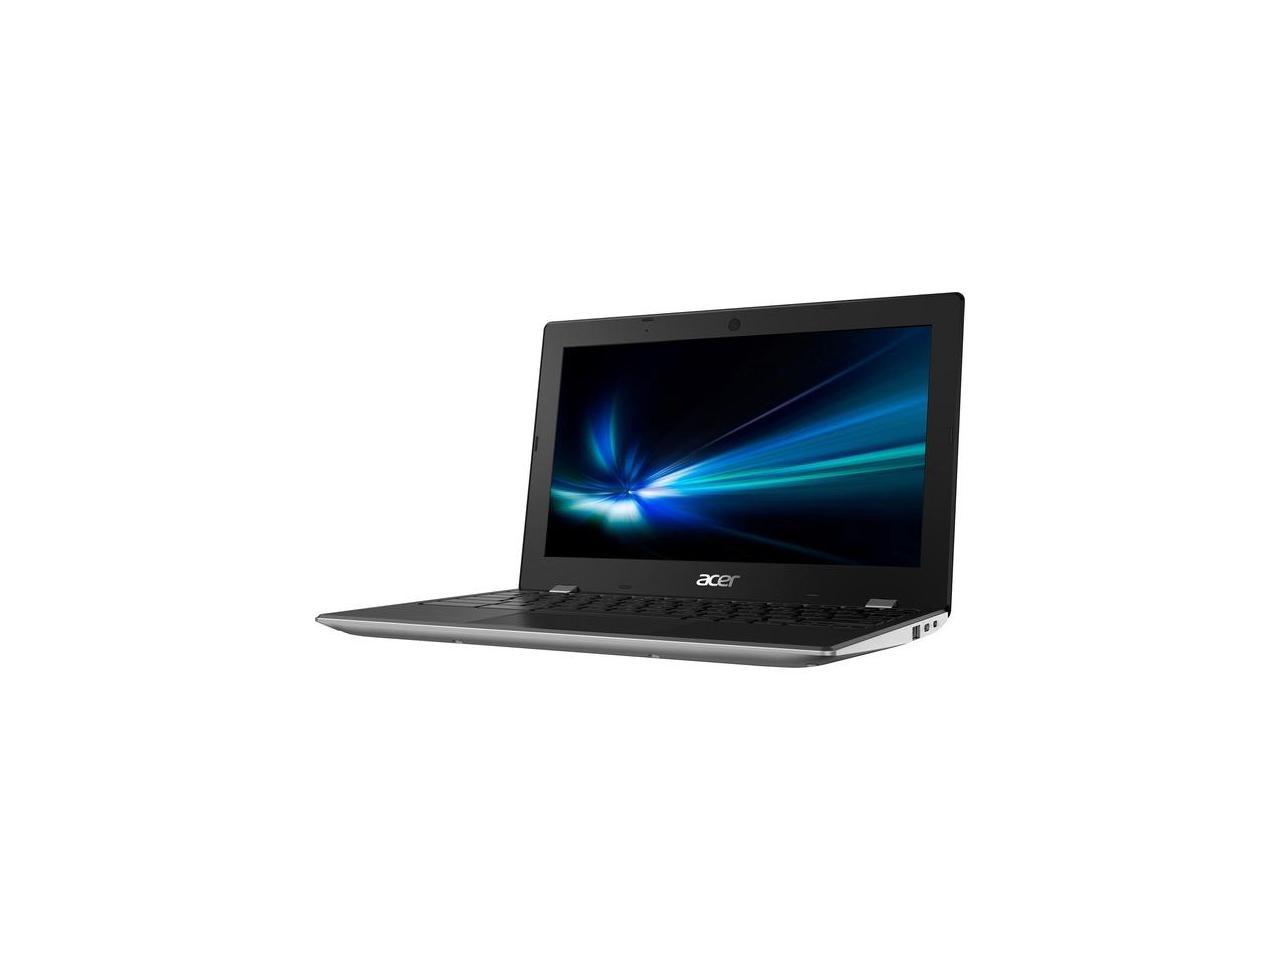 Acer Chromebook 311 C733 C733-C736 11.6